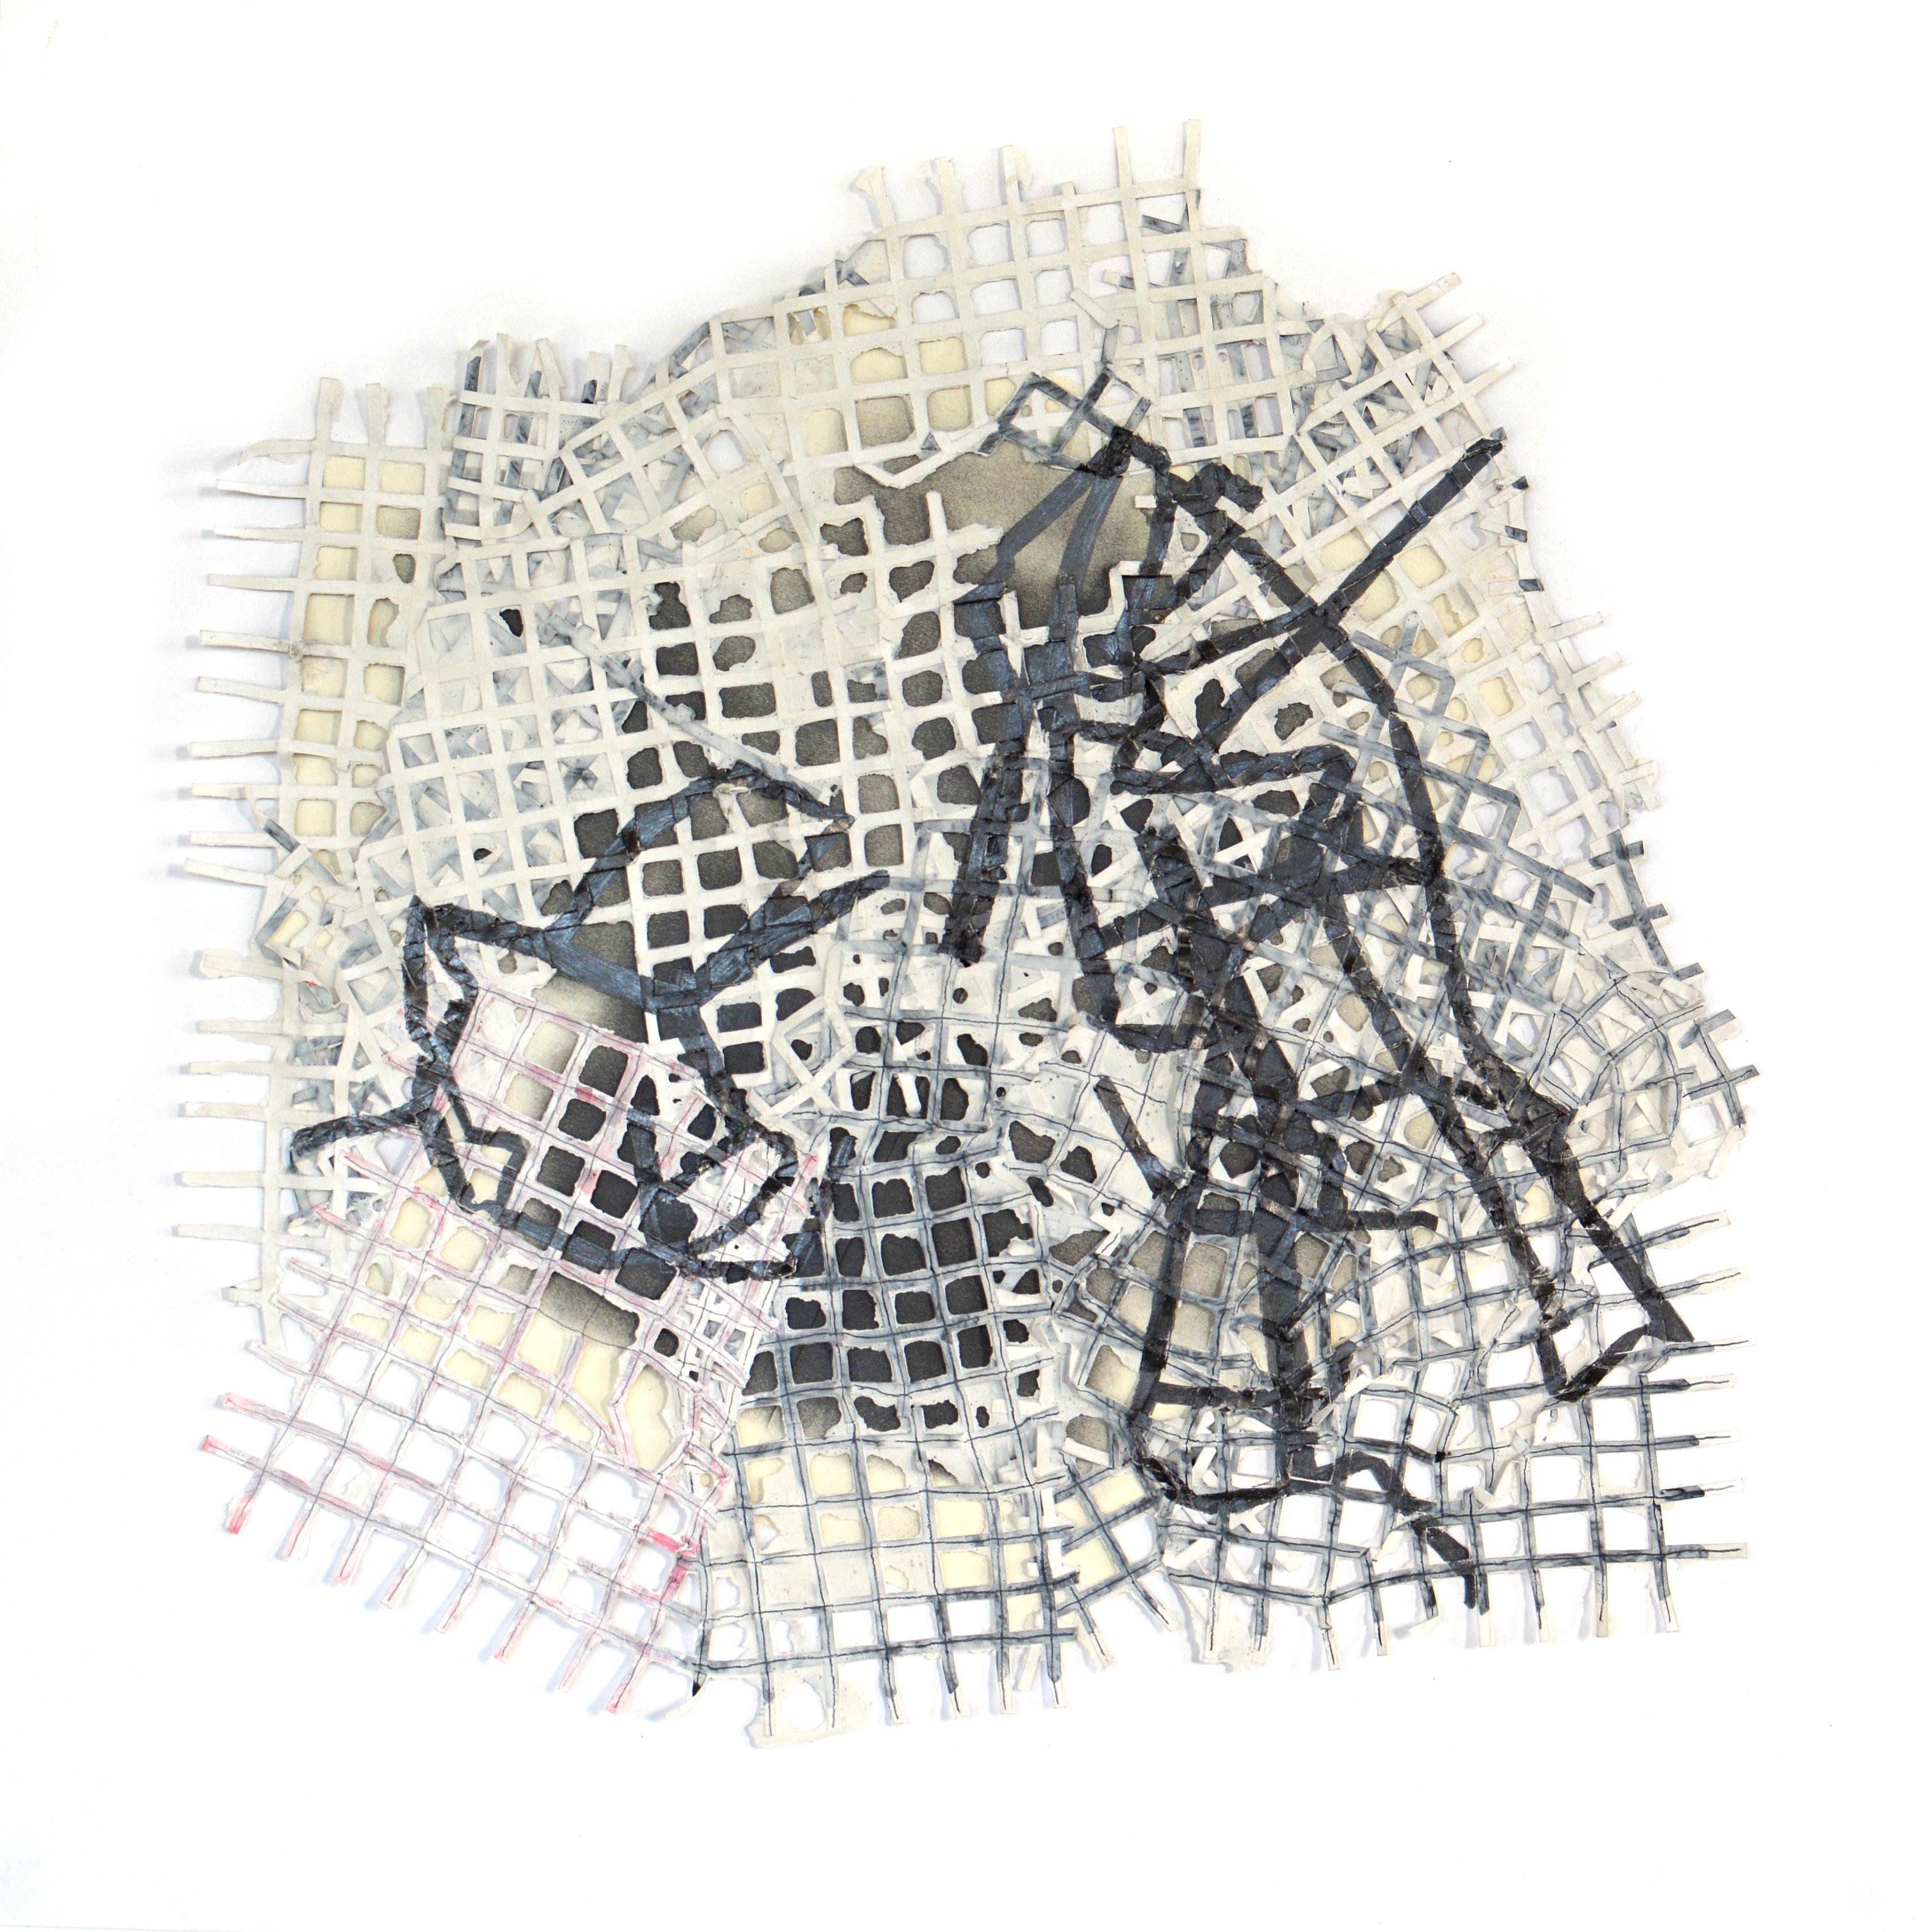 Cut Out (Series) 183SM, 2022, Peinture, encre et papier découpé, (non encadré), 50 × 50 × 2 cm, par Alan Franklin

Il s'agit d'un des dessins sculpturaux d'Alan utilisant des couches de papier découpées.  Alan s'intéresse aux idées de répétition et